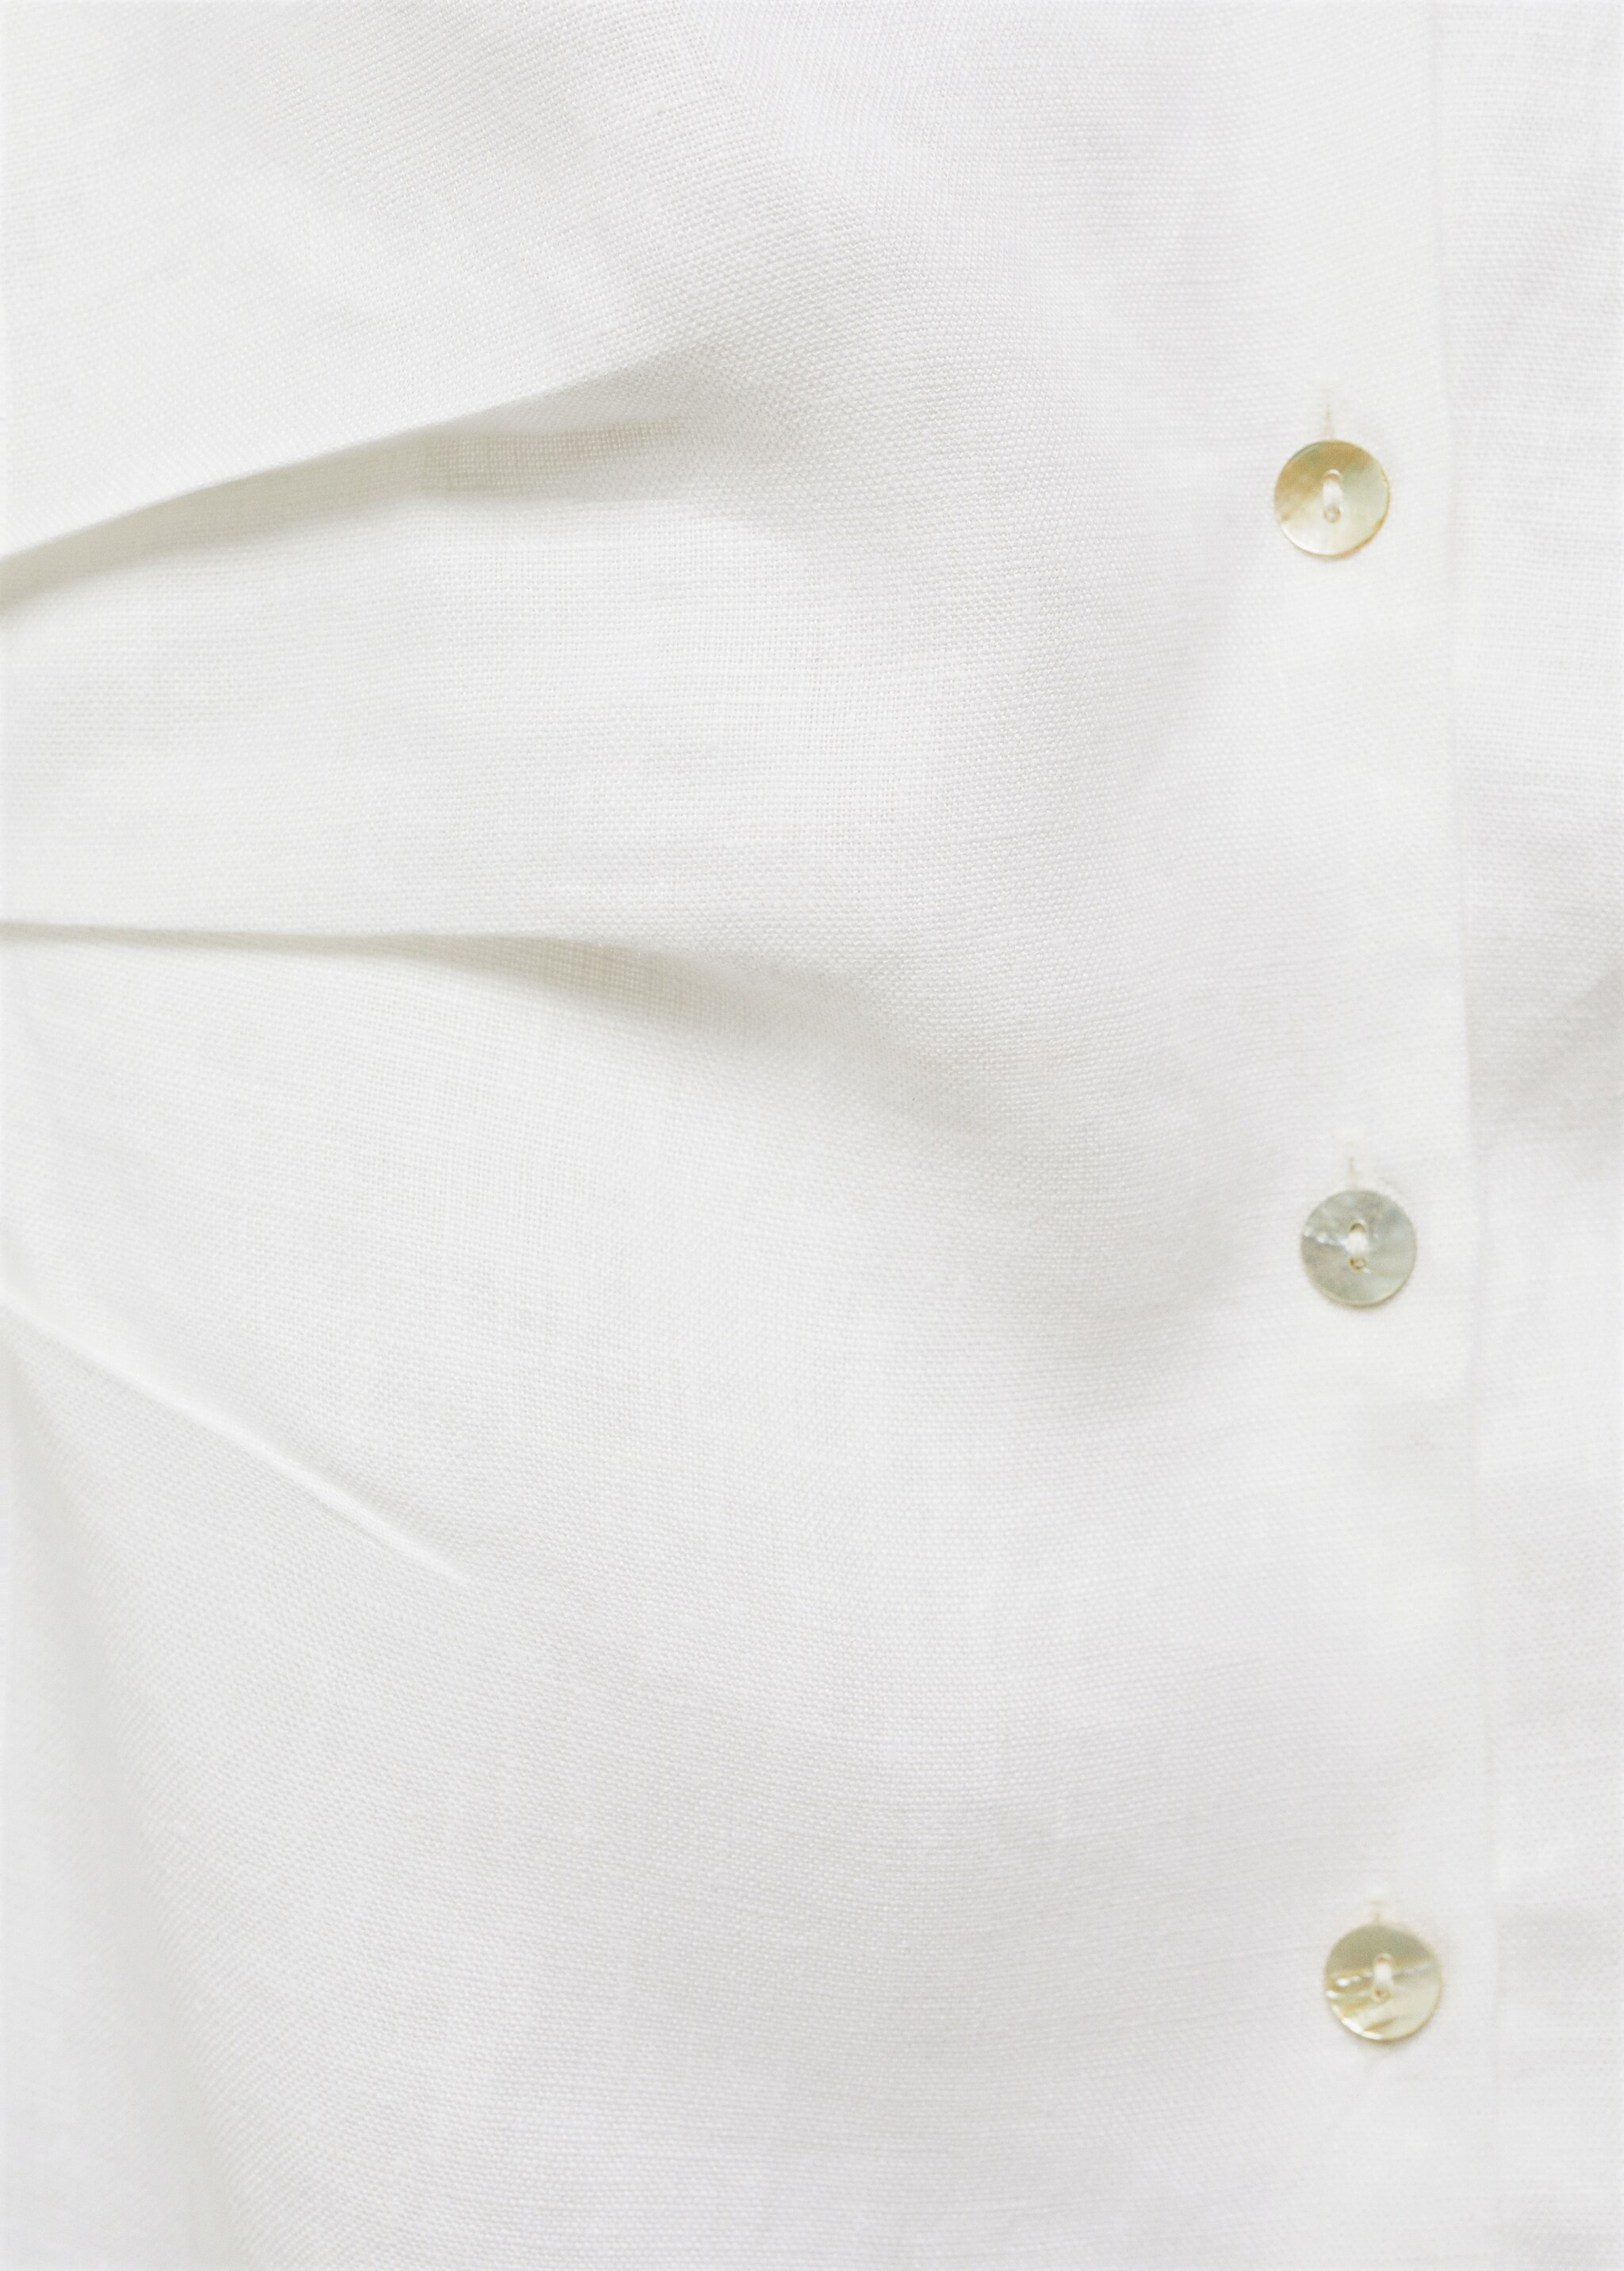 Linen shirt-collar dress - Details of the article 8